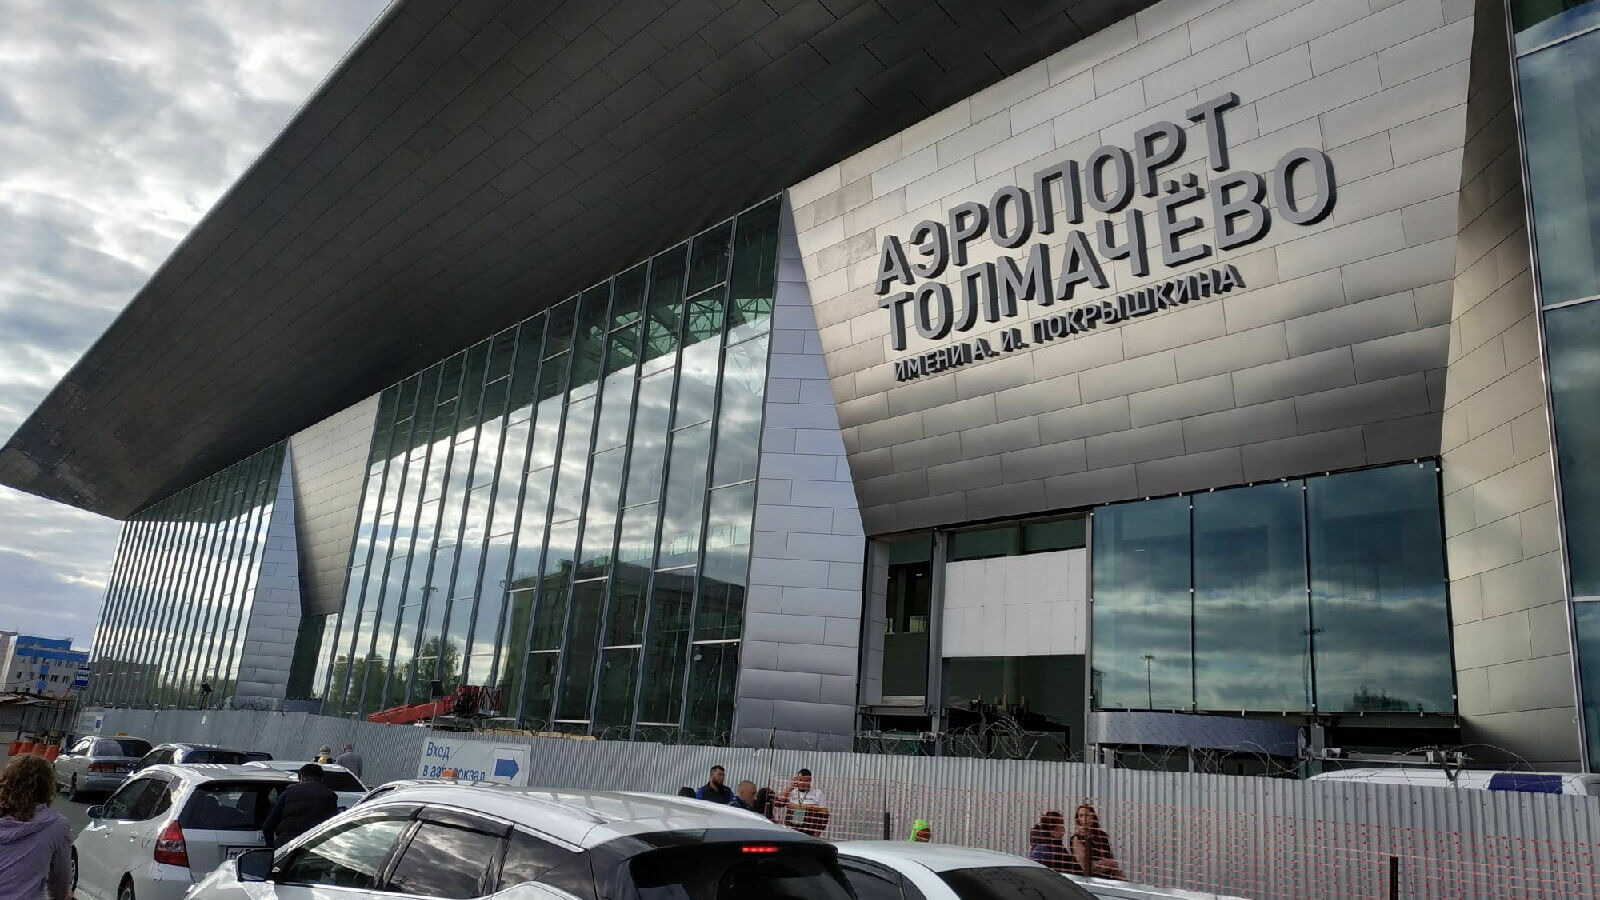 Строительство нового терминала началось в 2019 году